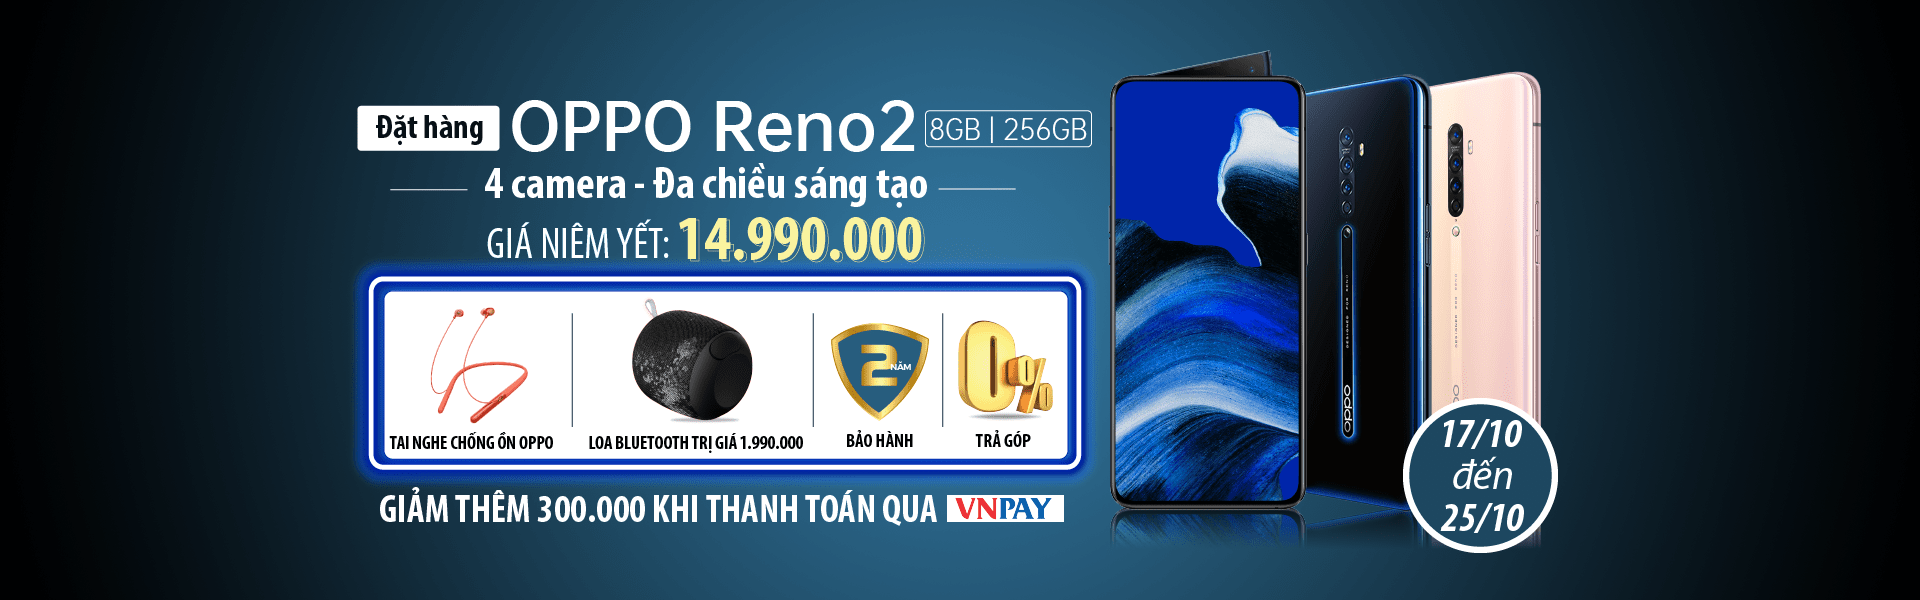 Oppo Reno2 (8GB/256GB) Chính Hãng, Giá Rẻ